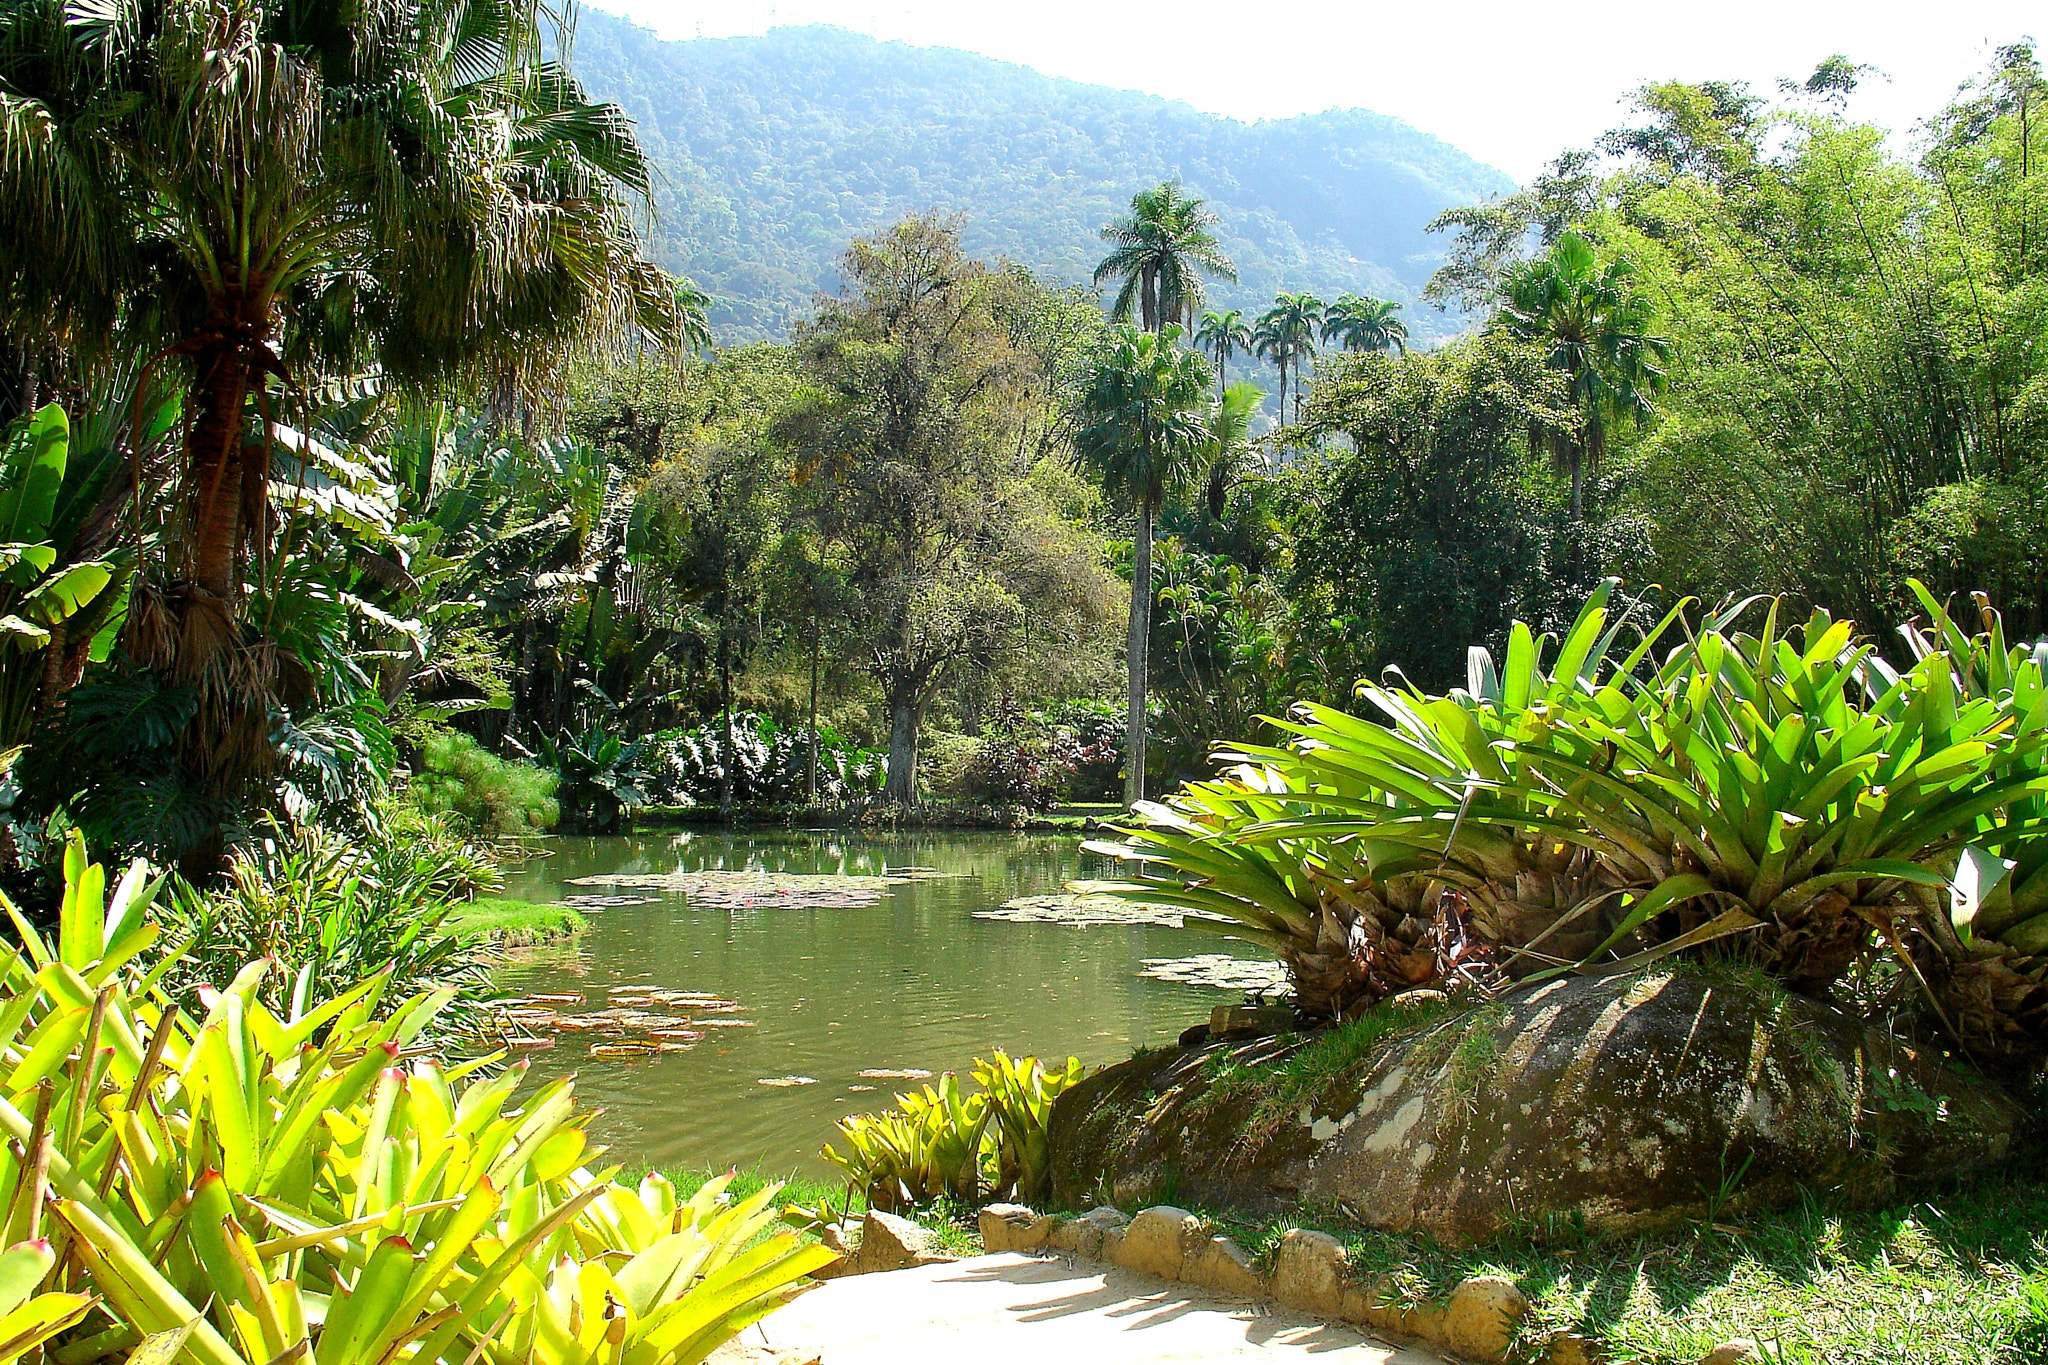 Sony DSC-V3 sample photo. Rio de janeiro botanic garden. photography